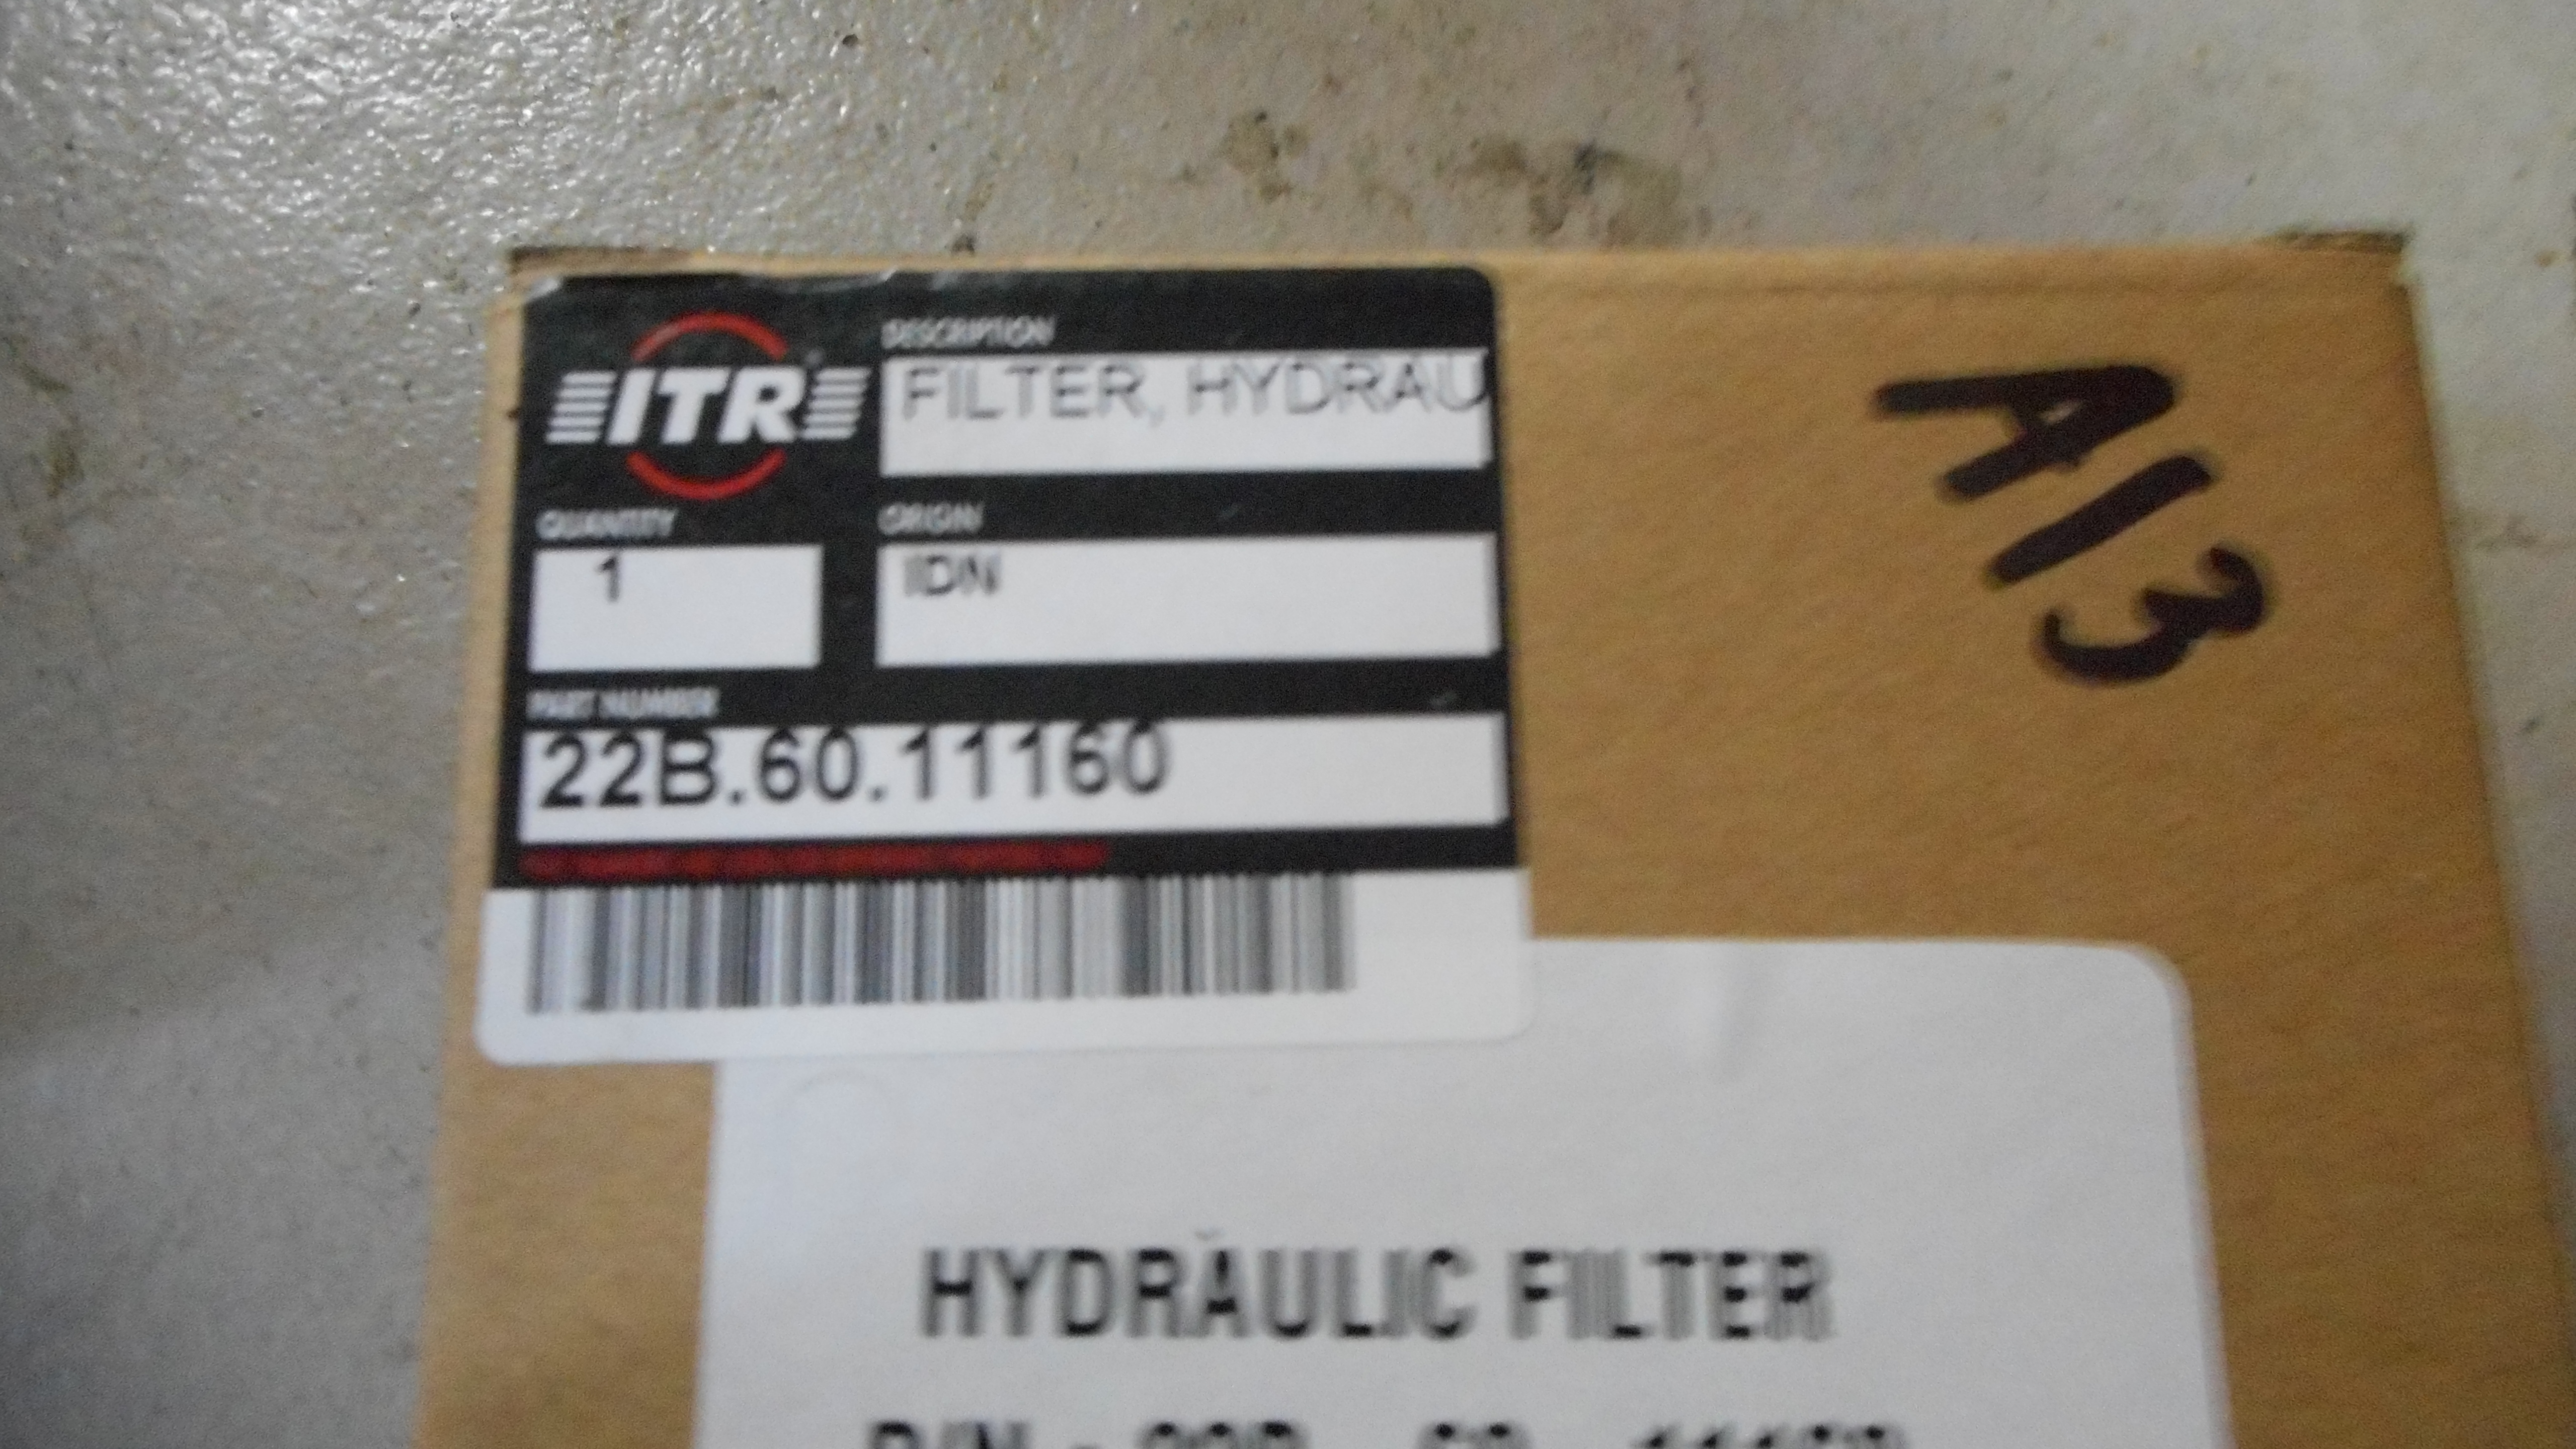 Фільтр гідравлічний ITR 22B-60-11160